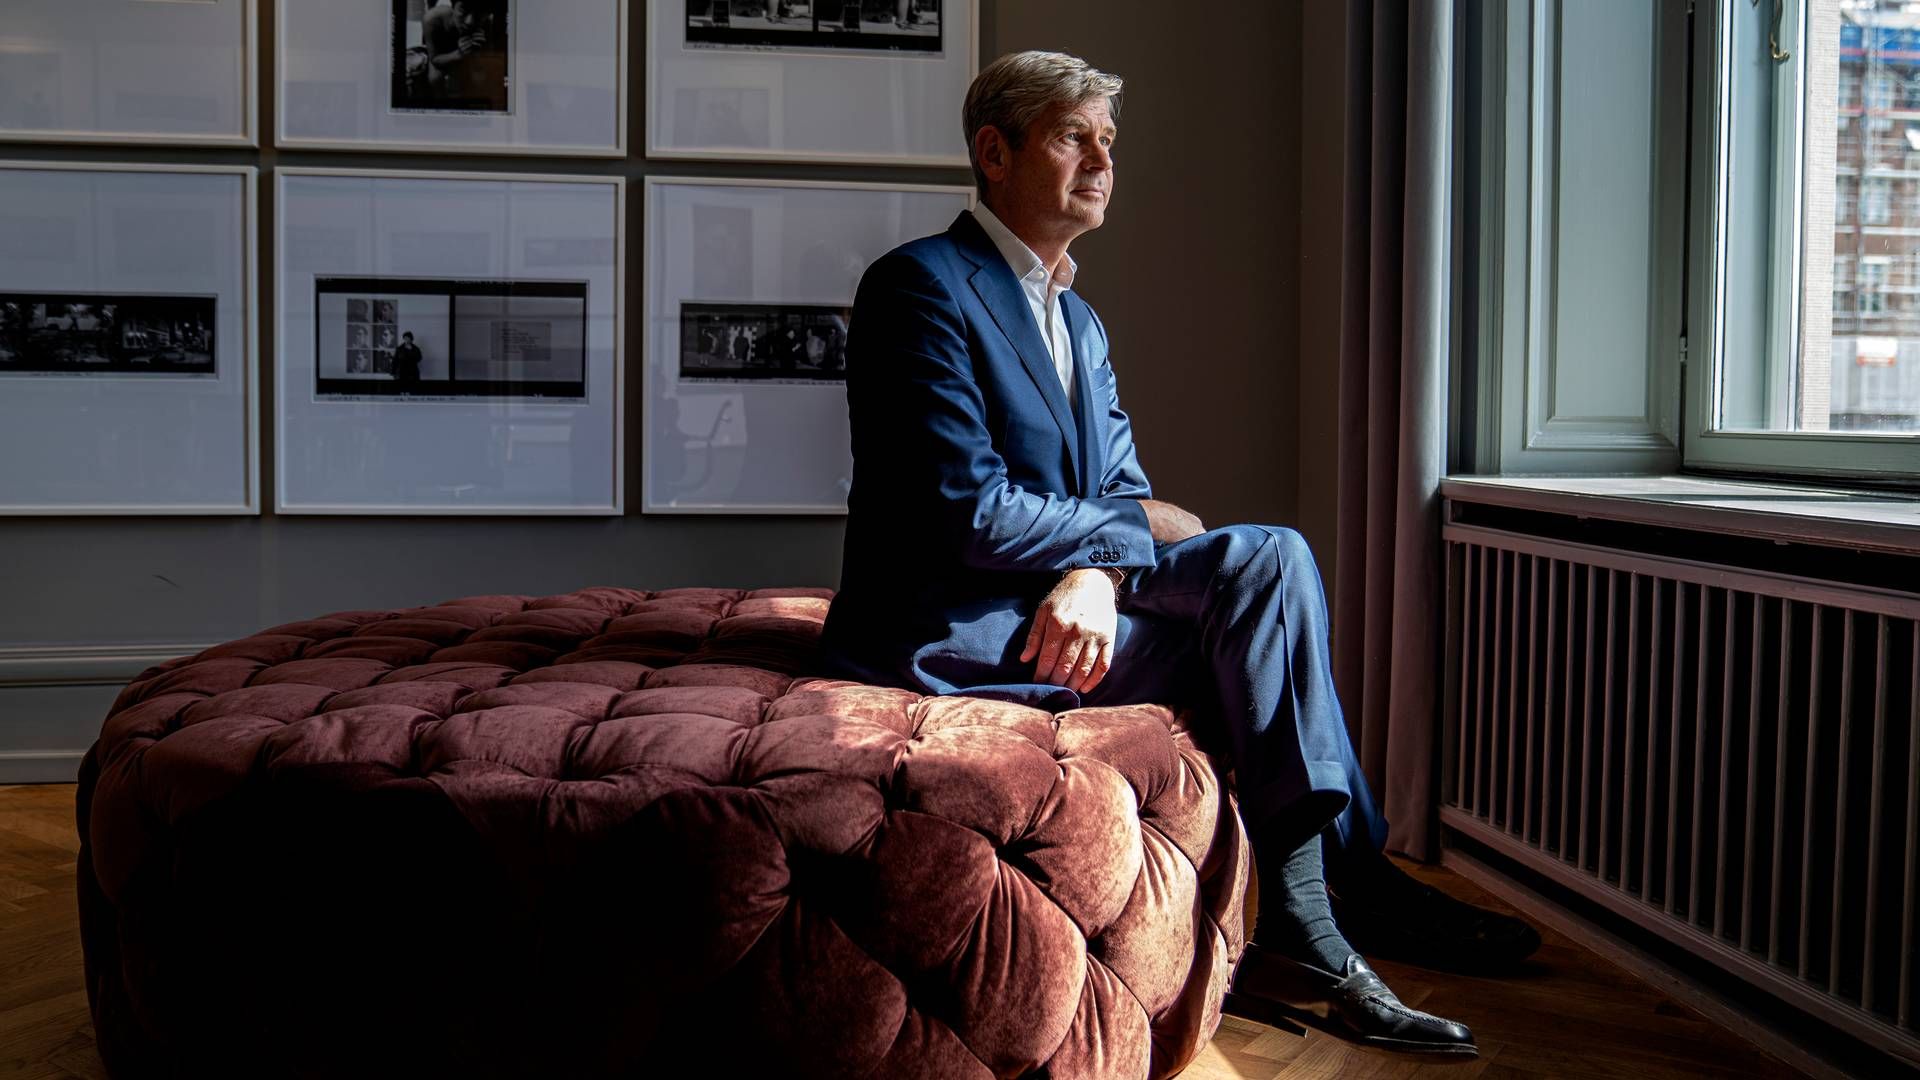 Søren Tulstrup, adm. direktør i Hansa Biopharma, kalder det for rettidig omhu at nedlægge op mod en fjerdedel af selskabets stillinger. | Foto: Stine Bidstrup